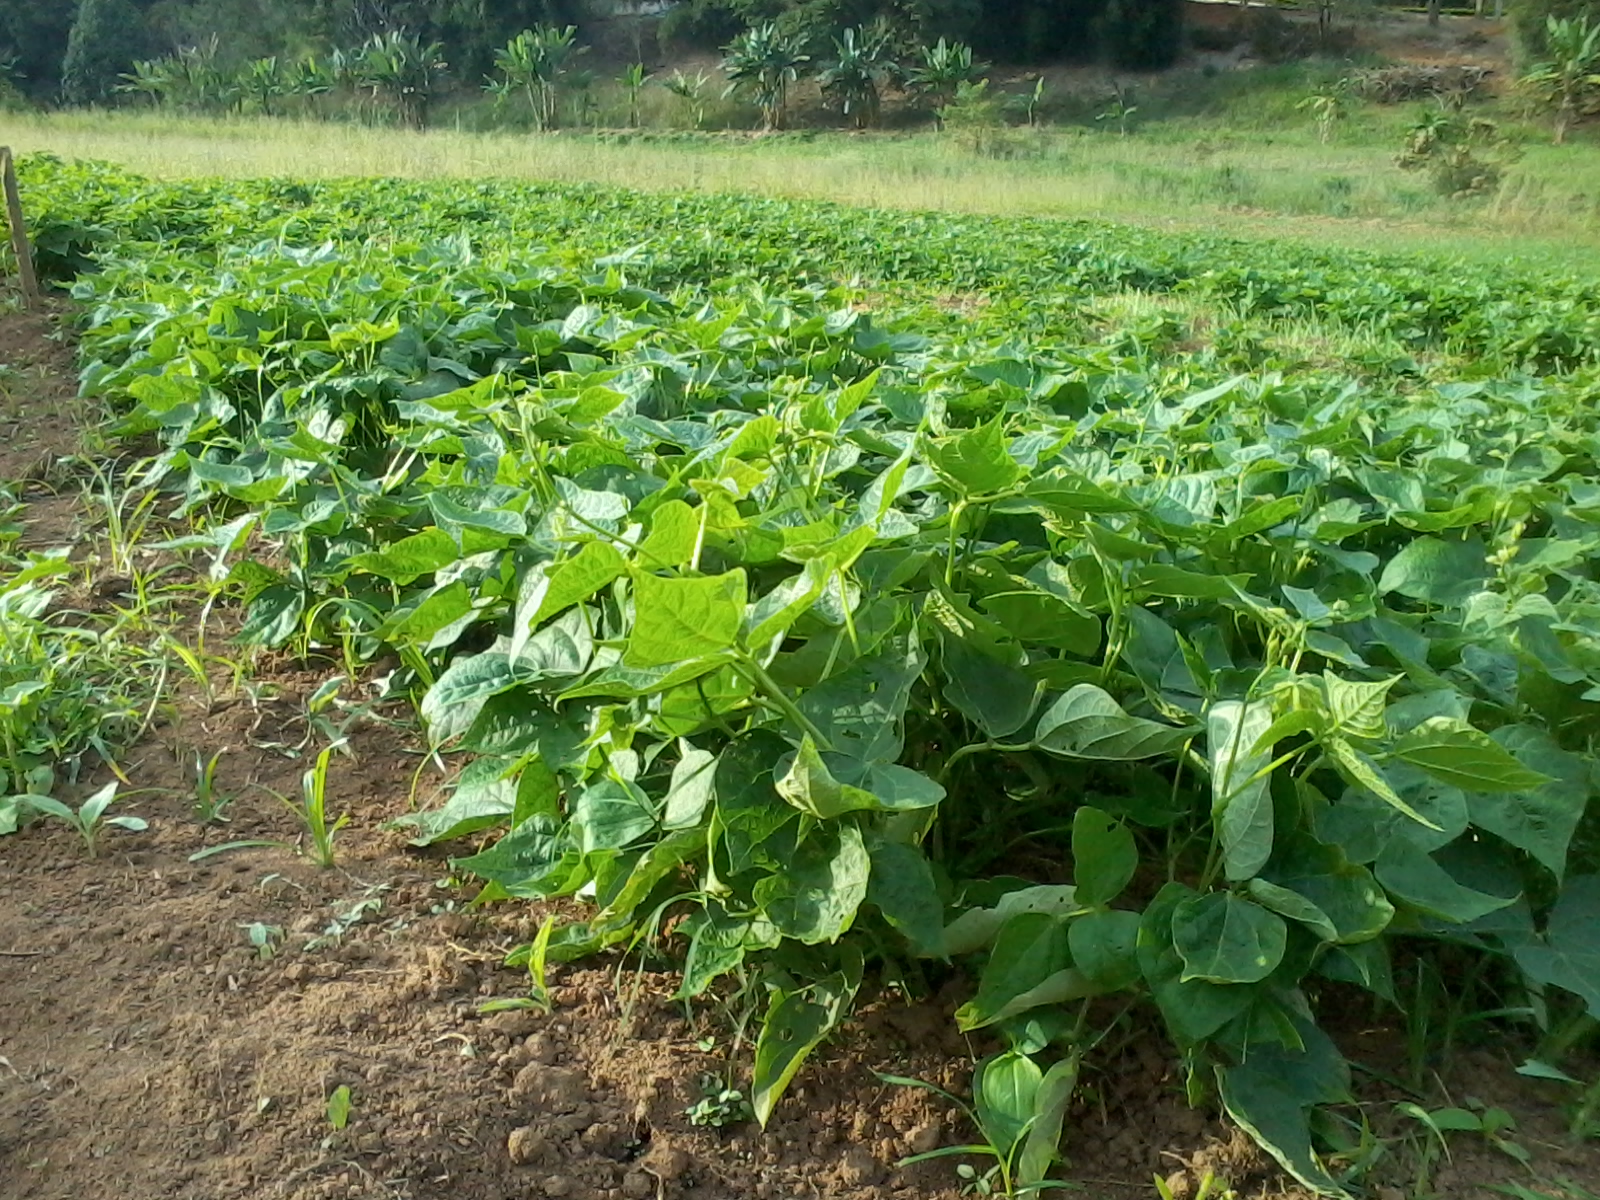 Plantas de feijoeiro (Phaseolus vulgaris) em estádio de crescimento vegetativo.